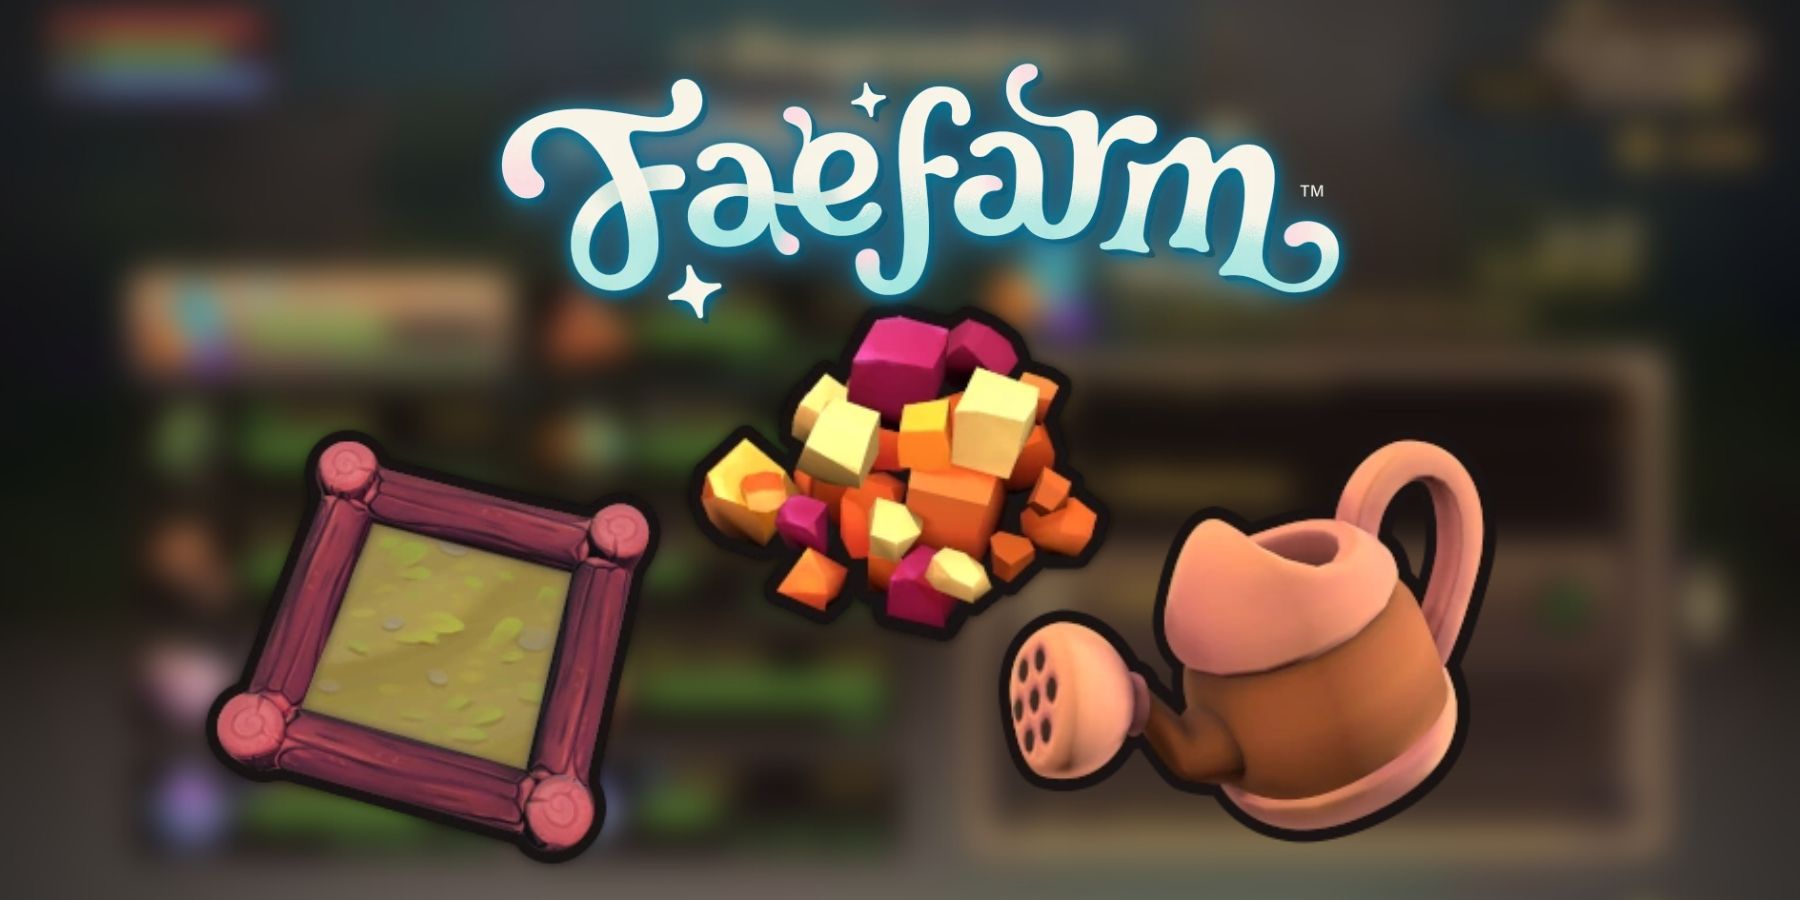 Fae Farm (Switch) - Digital Download